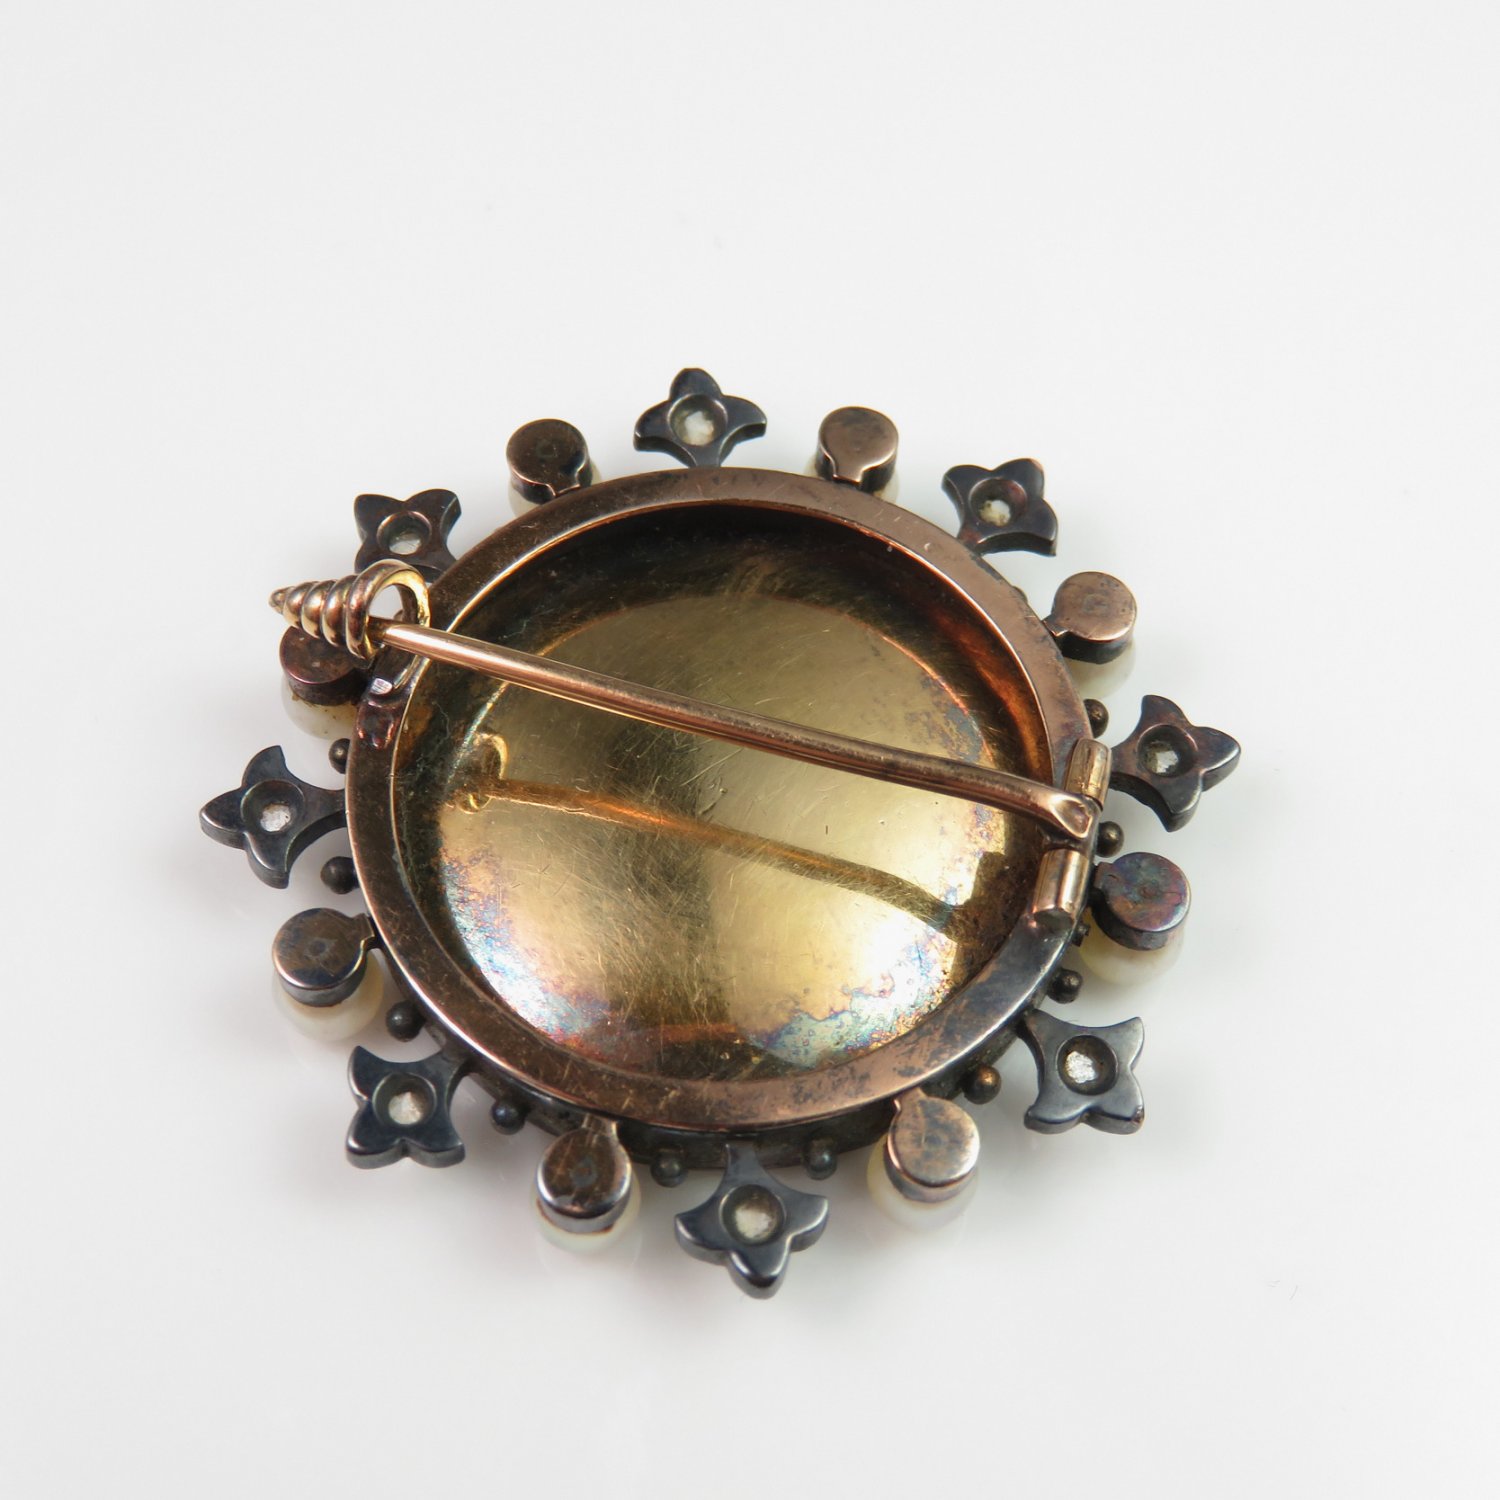 Victorian Enamel Portrait Brooch Diamond Pearl 18K Gold Brooch Enamel Jewelry Rose Cut Diamond Pin